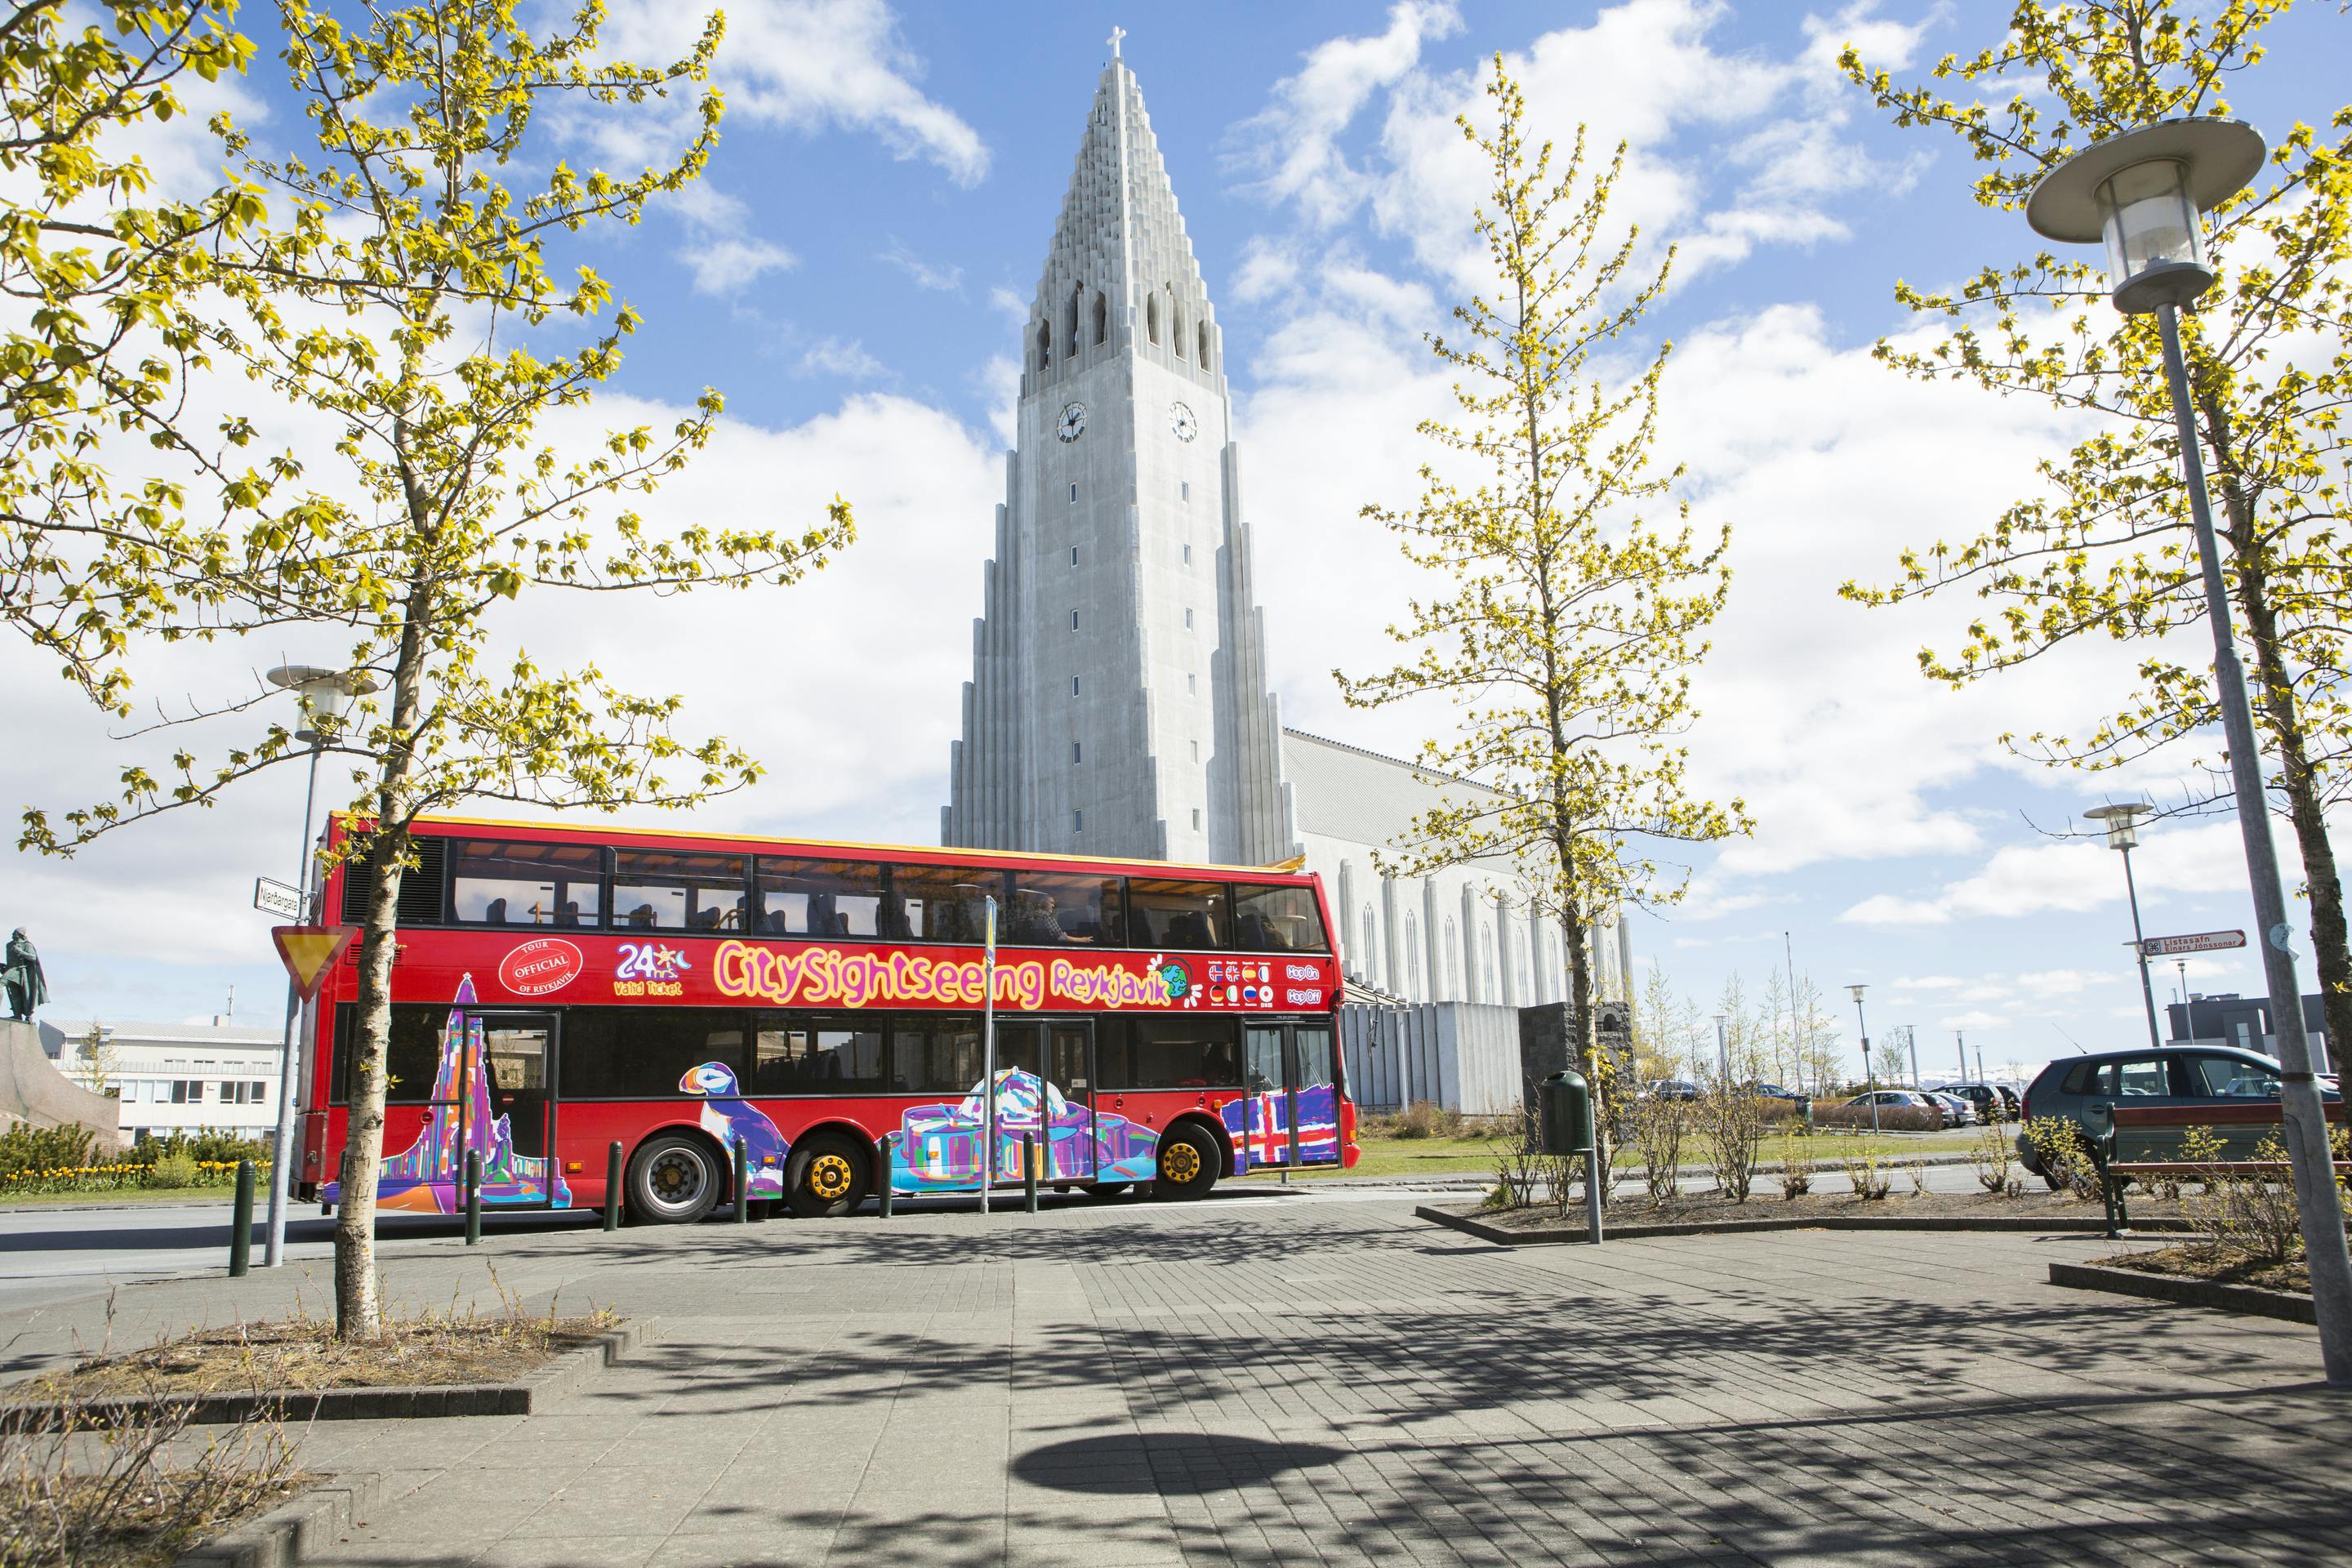 Wycieczka autobusowa City Sightseeing po Reykjaviku z możliwością wsiadania i wysiadania na dowolnych przystankach